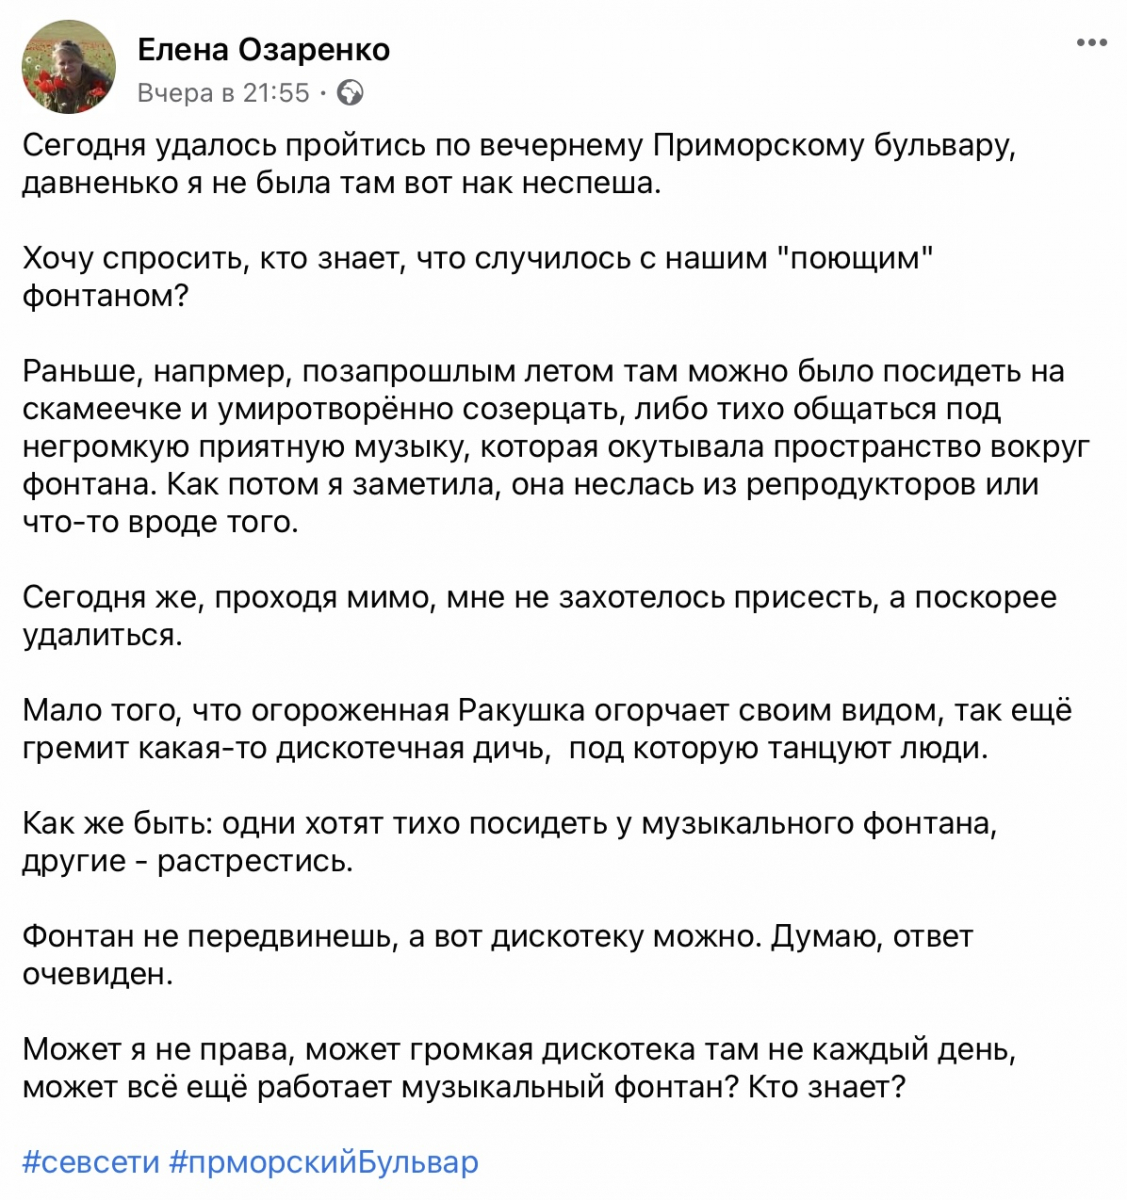 севсети севастополь соцсети новости форпост приморский бульвар